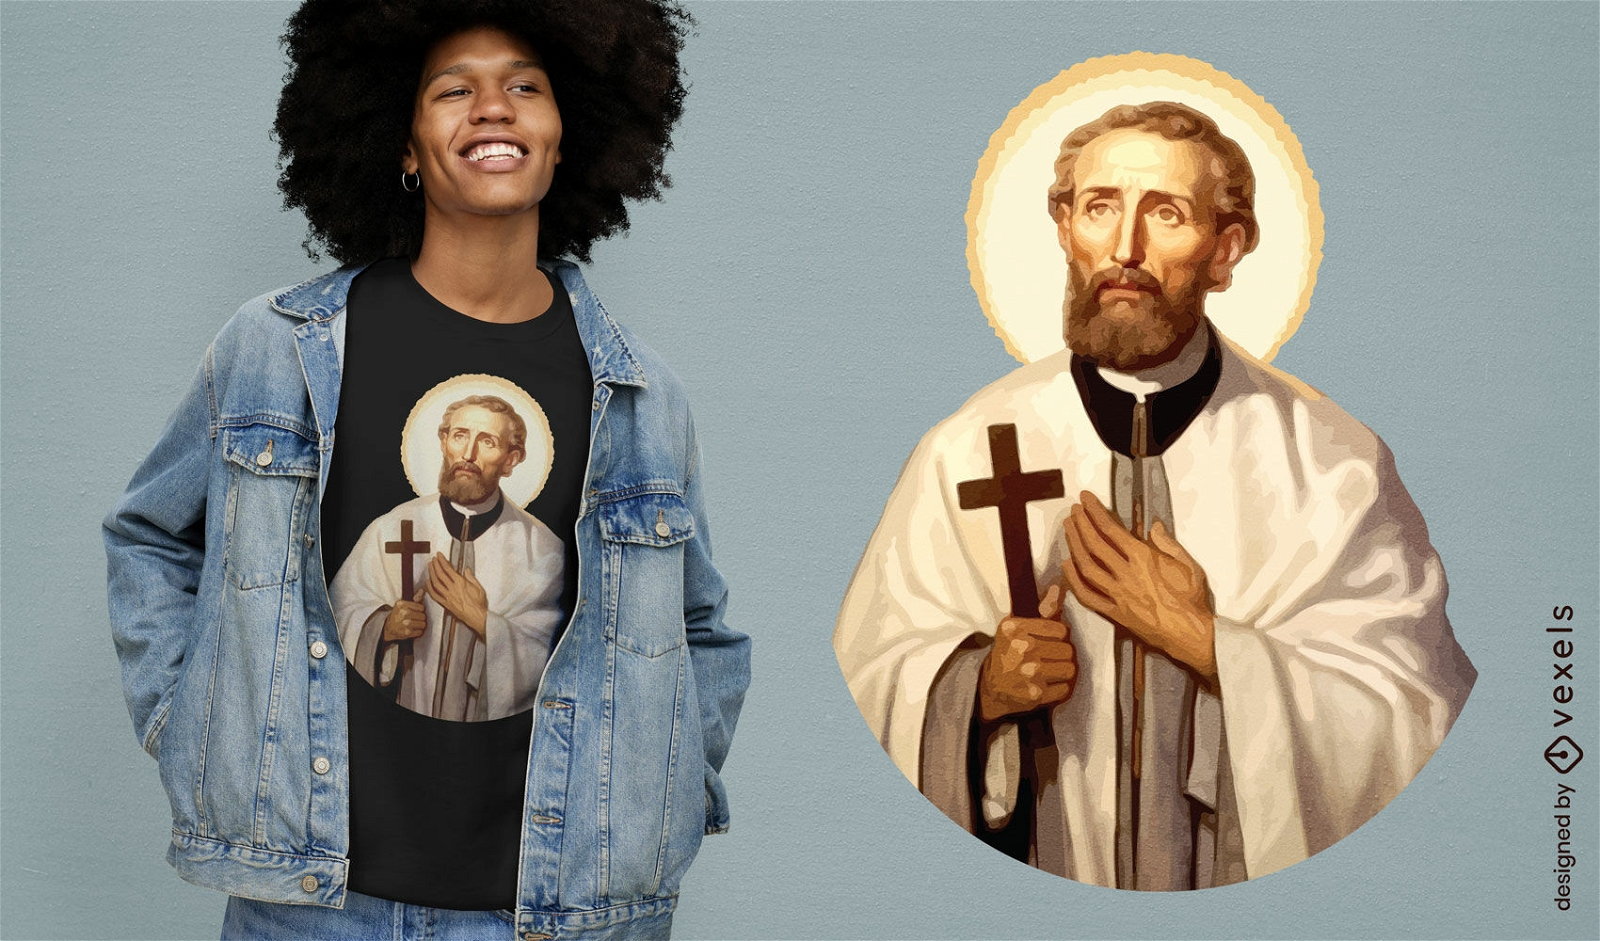 Diseño de camiseta de figura religiosa de Jesús.